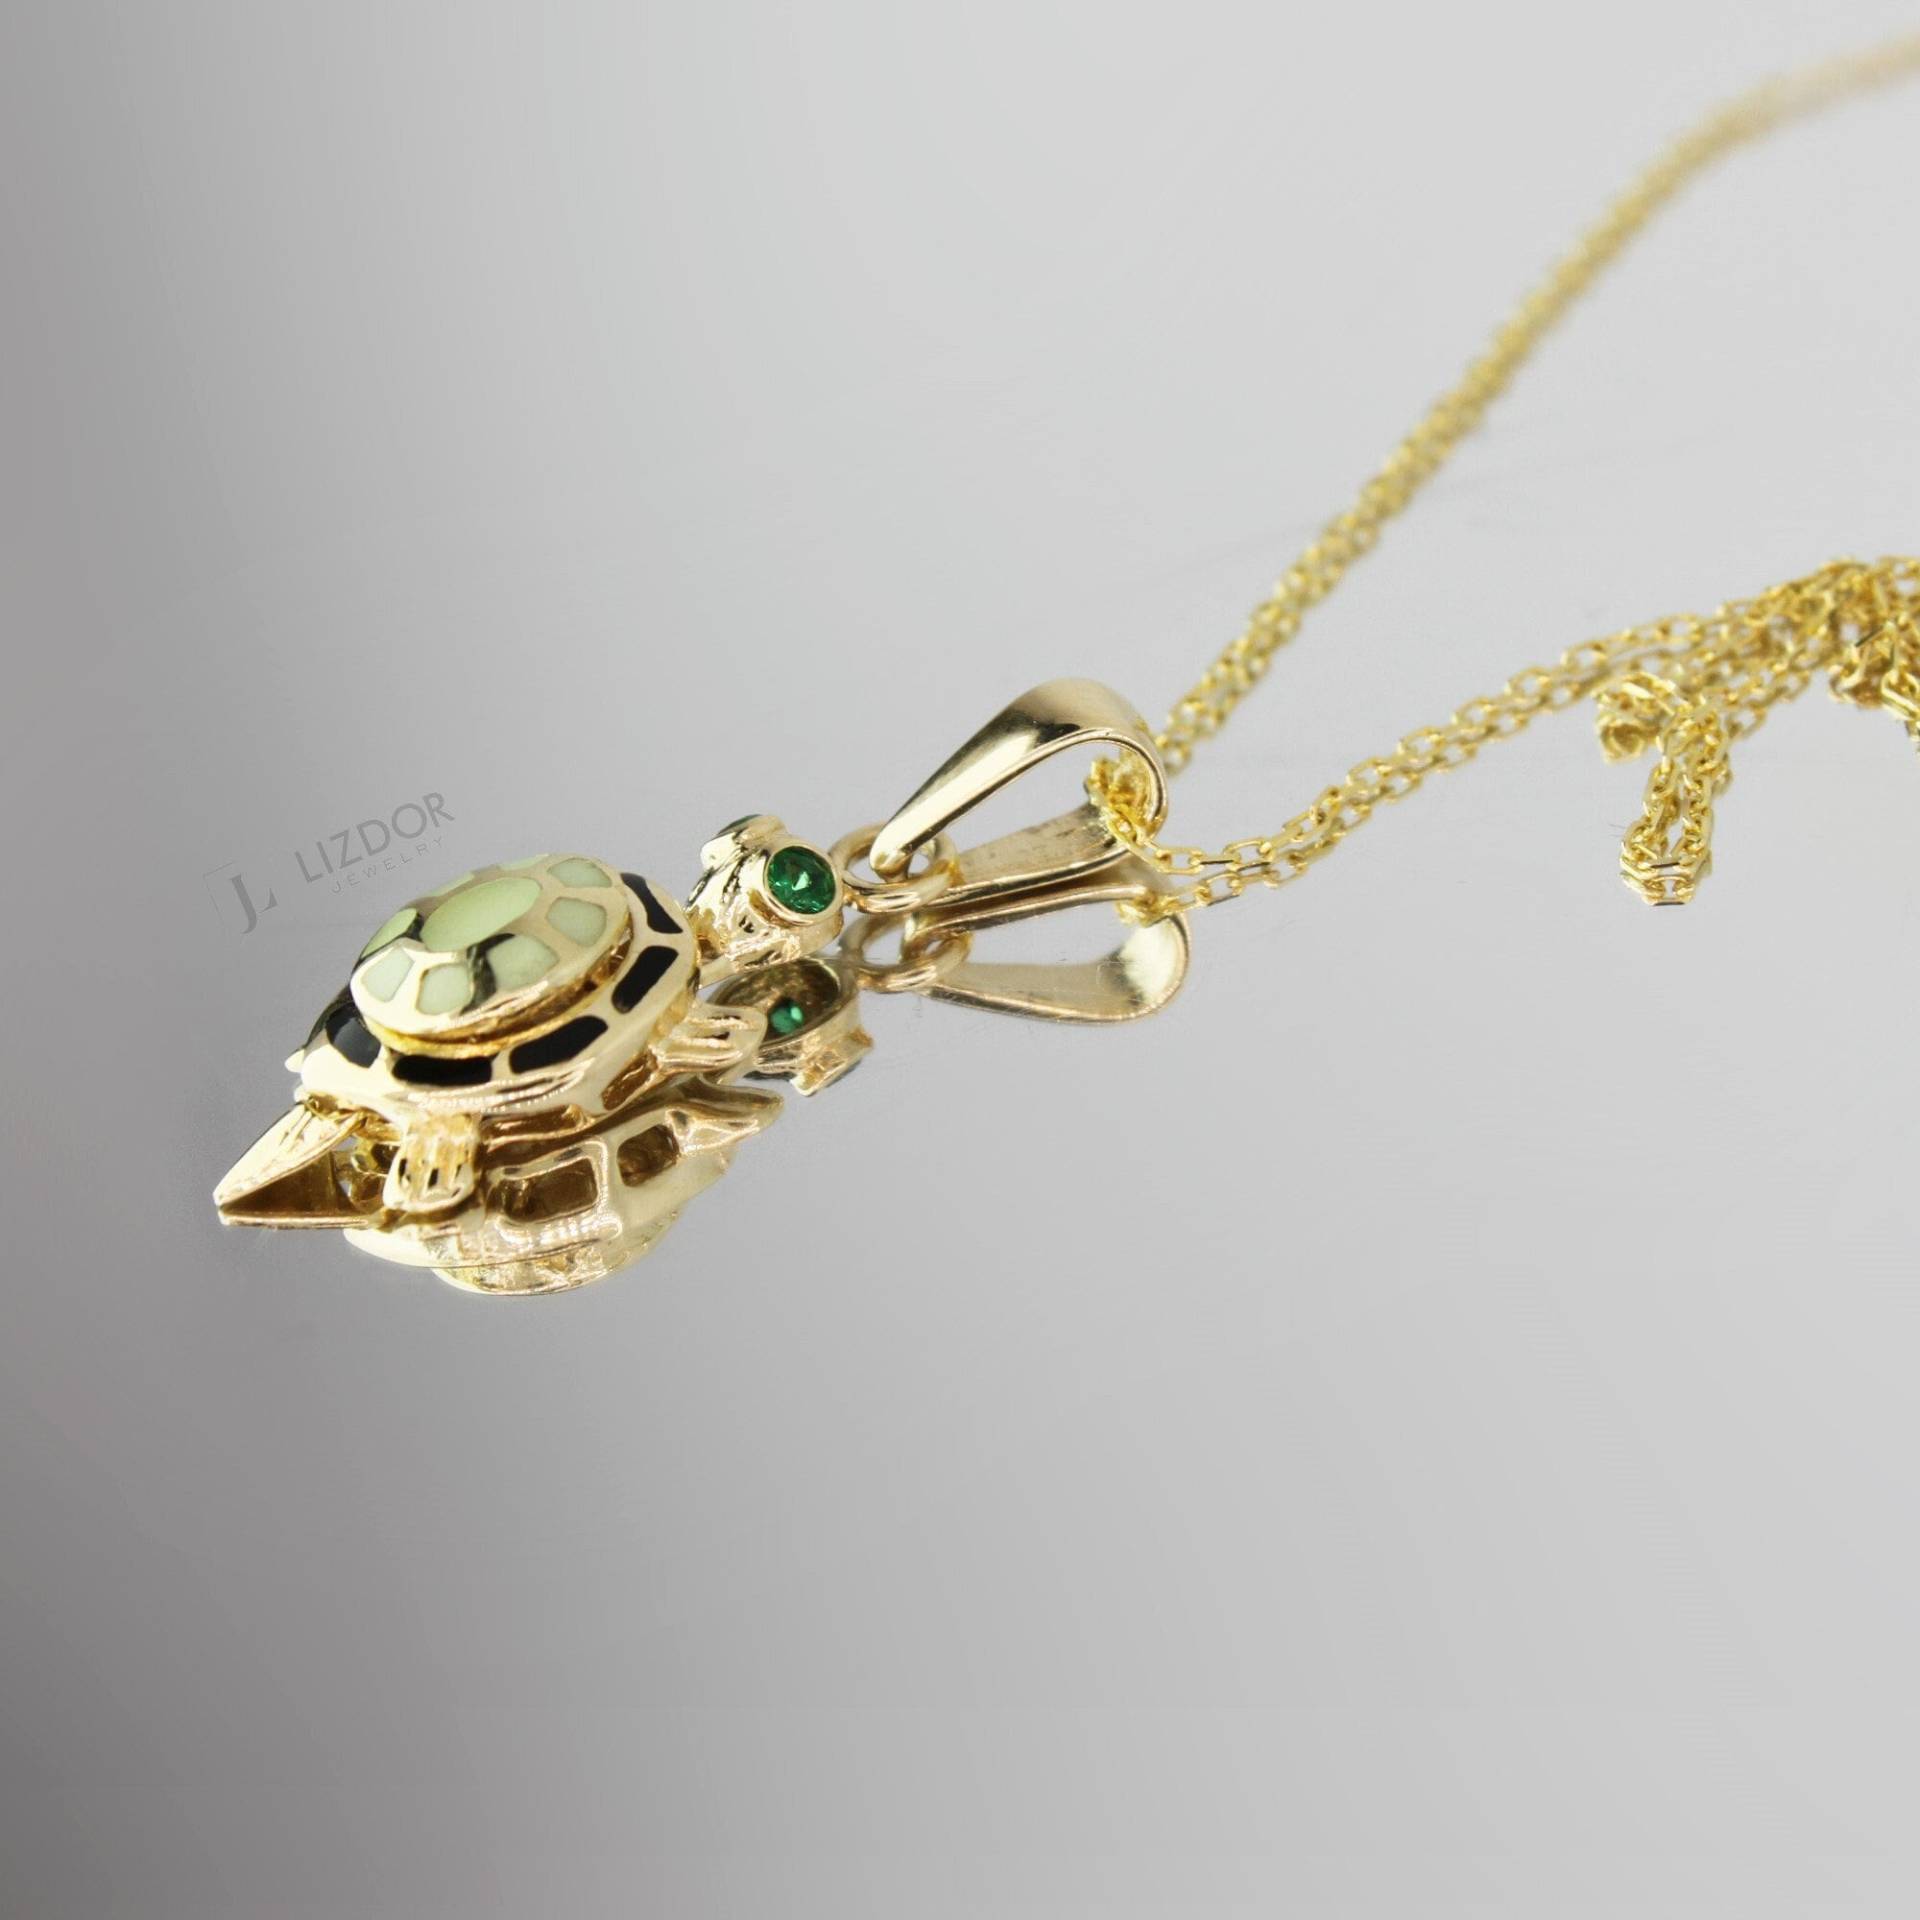 Goldene Schildkröten-Halskette, 14-Karätige Phosphor-Licht-Halskette, Gold-Tier-Anhänger, Leuchtet Im Dunkeln, Halskette, Besonderes Design von LizdorJewelry